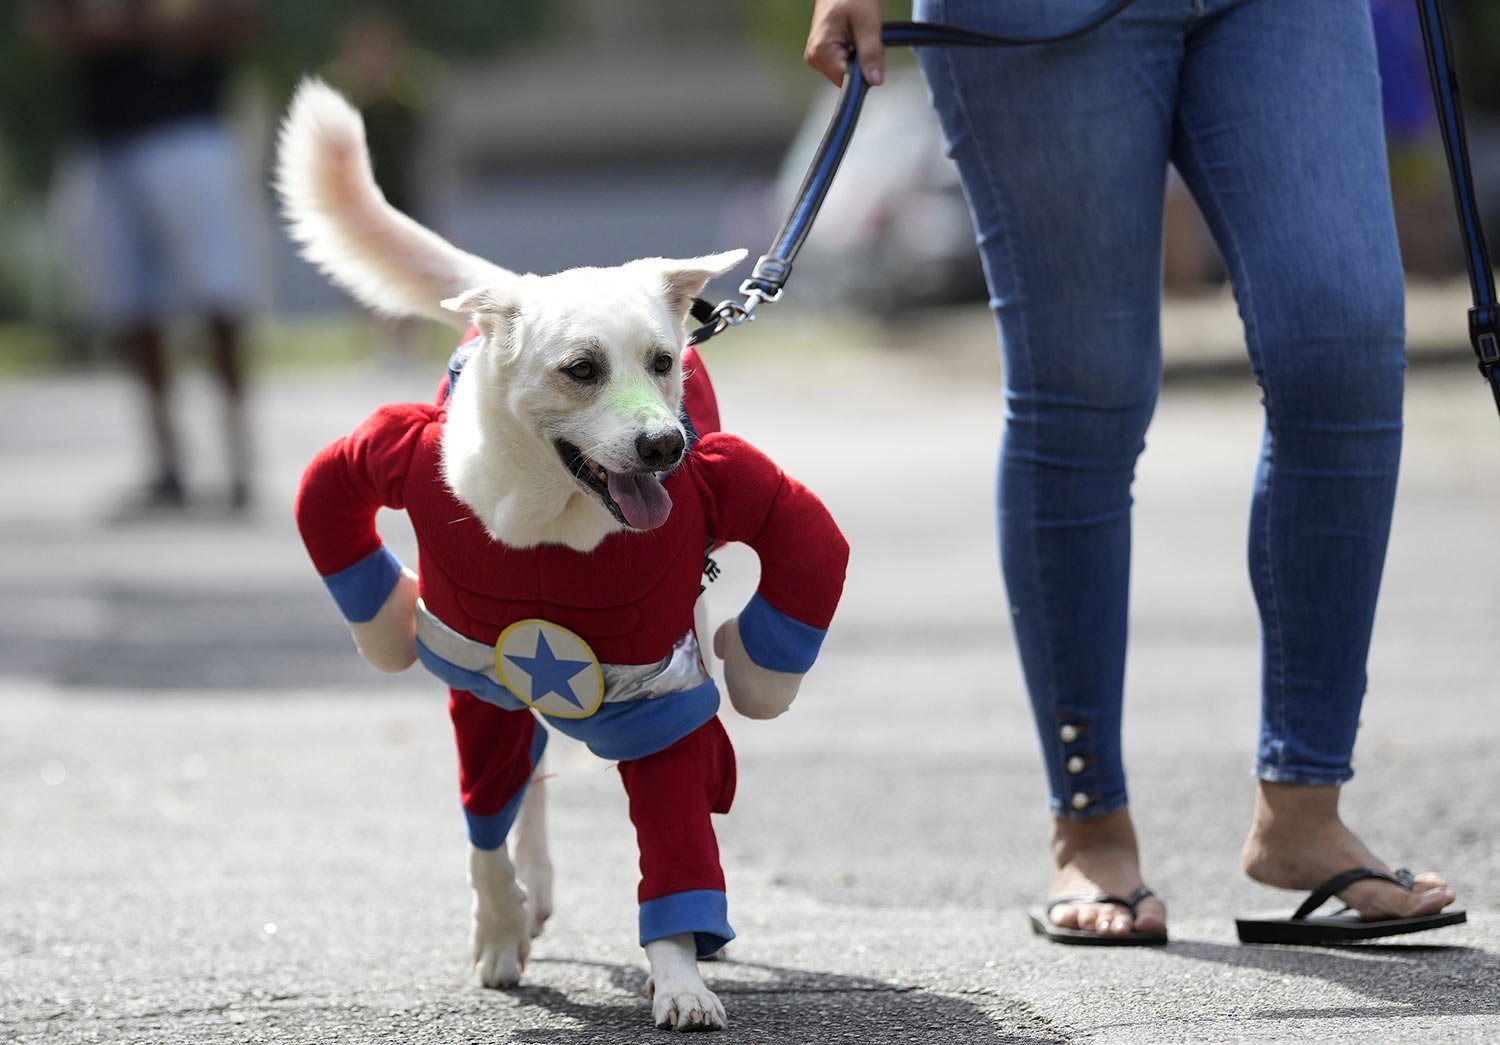  A dog wearing a Captain America costume attends the "Blocao" dog carnival parade in Rio de Janeiro, Brazil, Saturday, Feb. 18, 2023. (AP Photo/Silvia Izquierdo) 